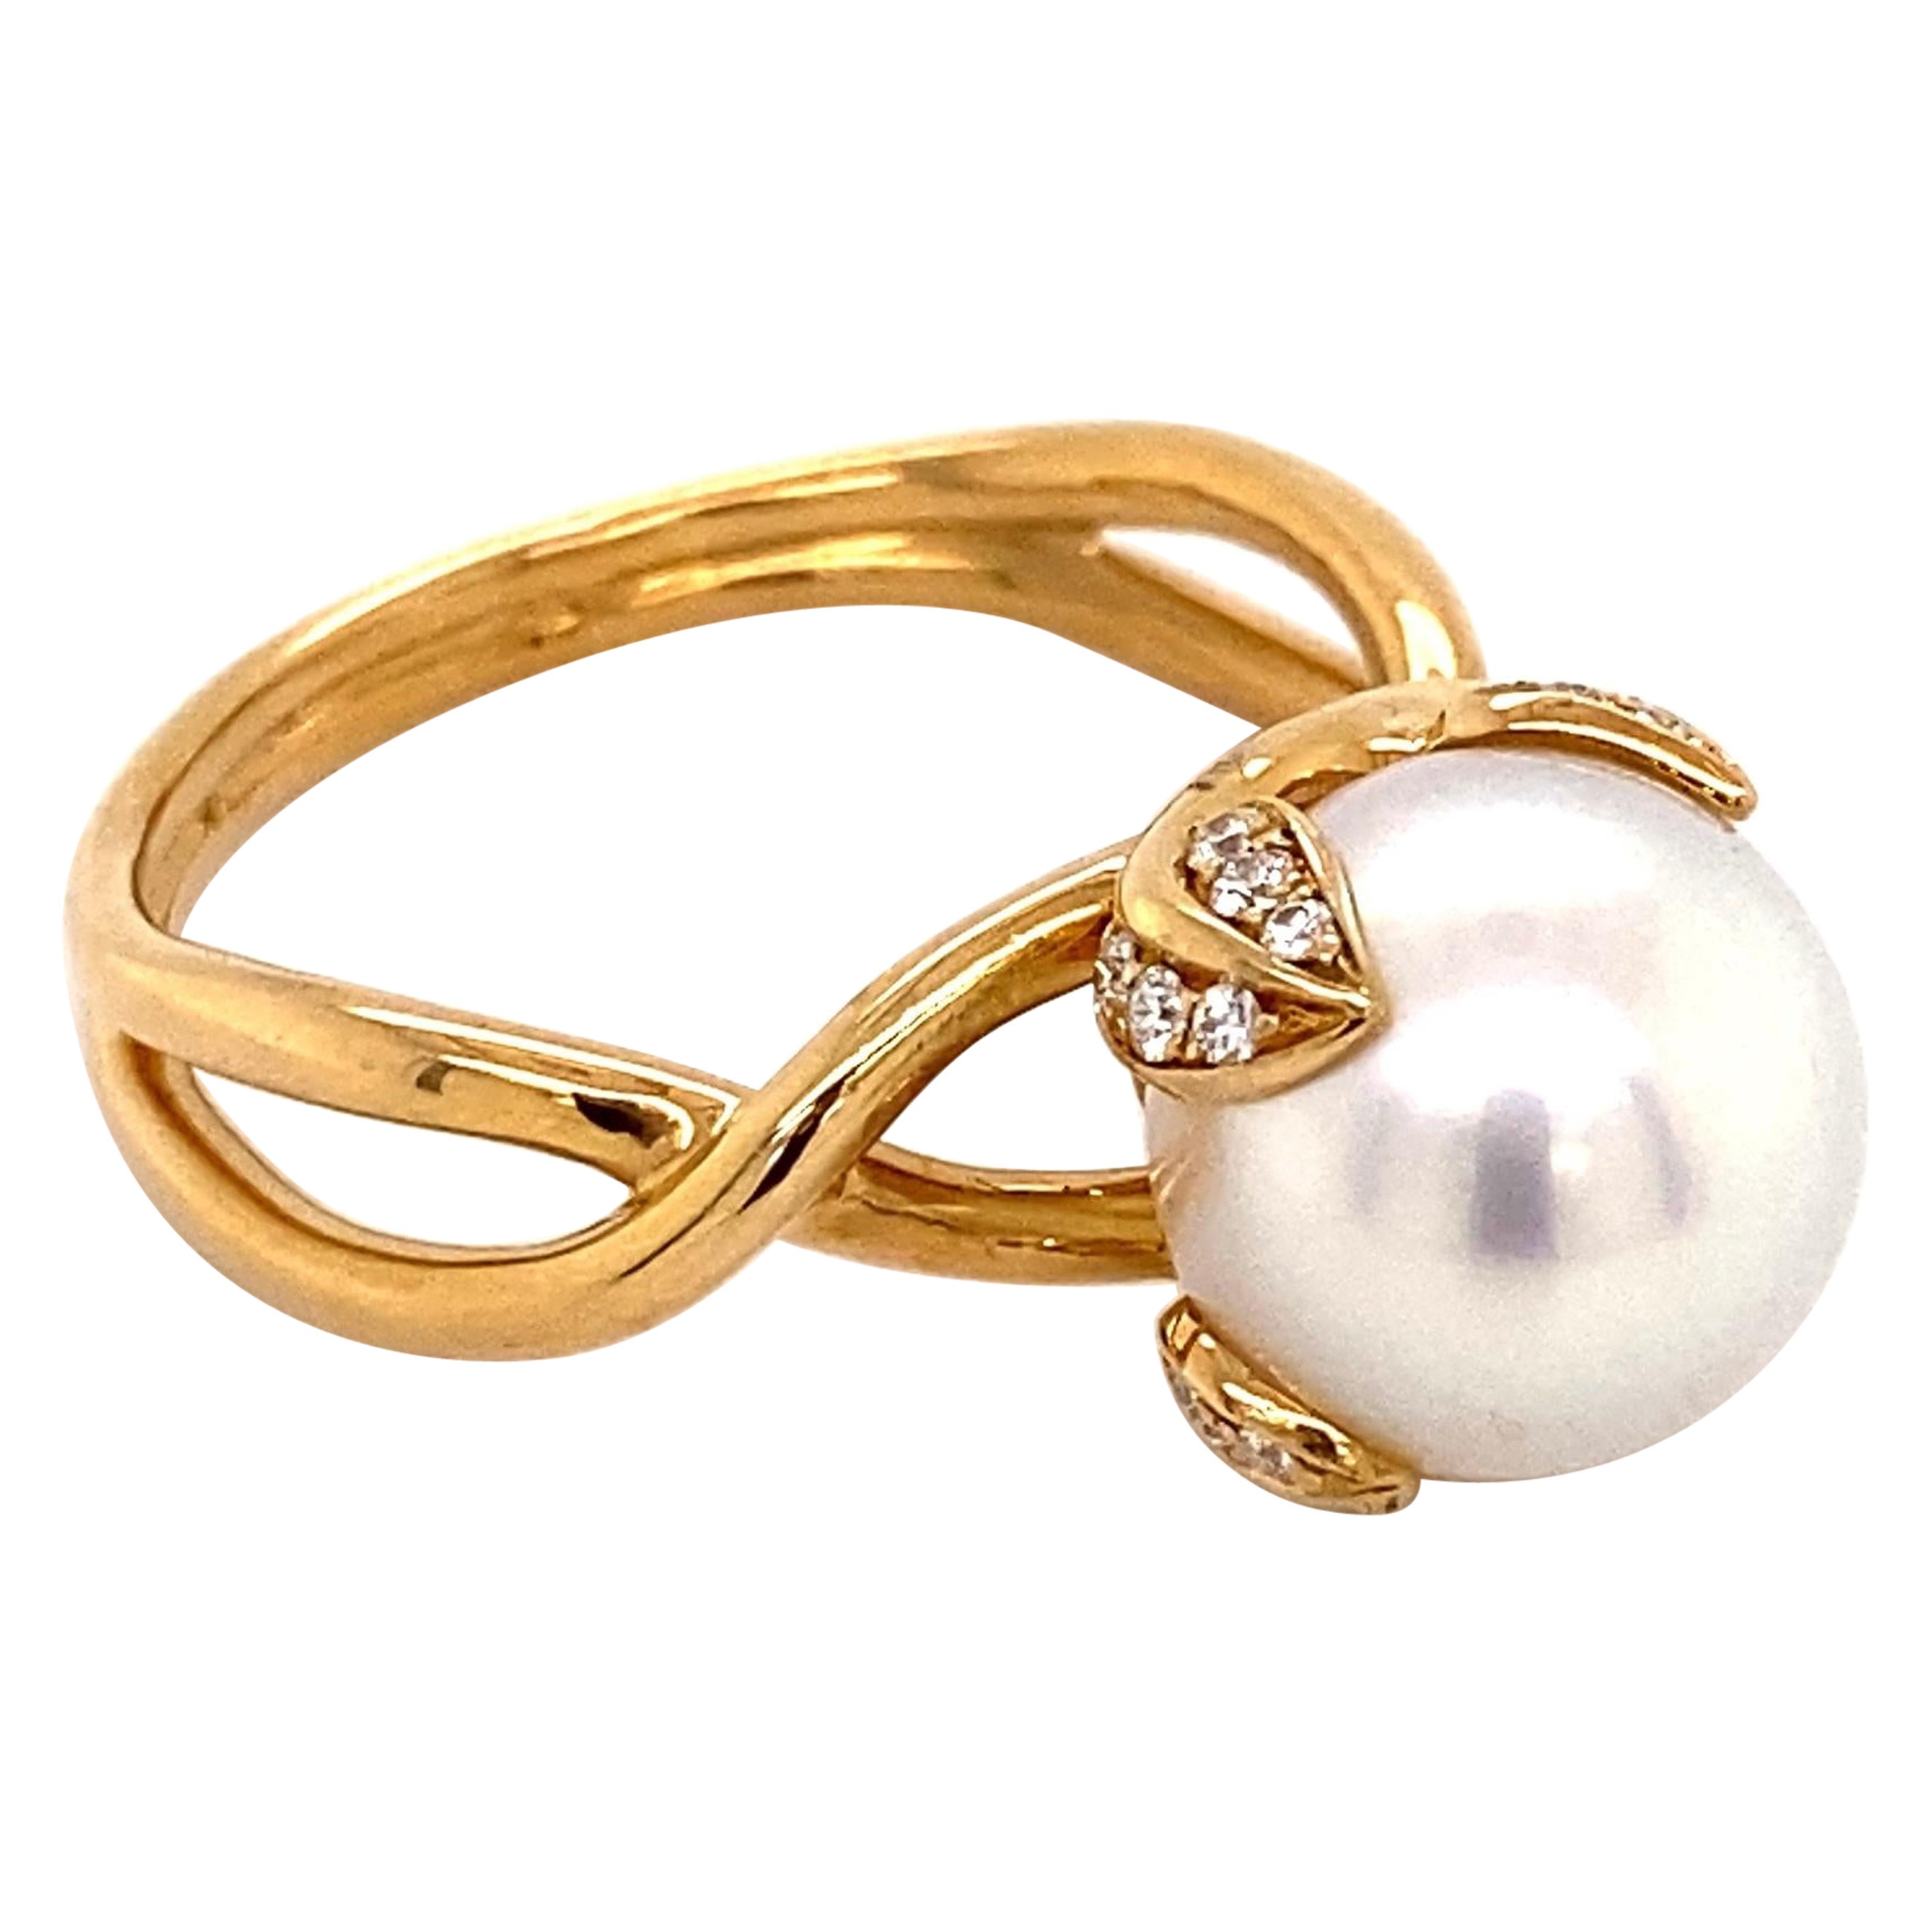 Tiffany & Co France, bague de succession en or, perles et diamants